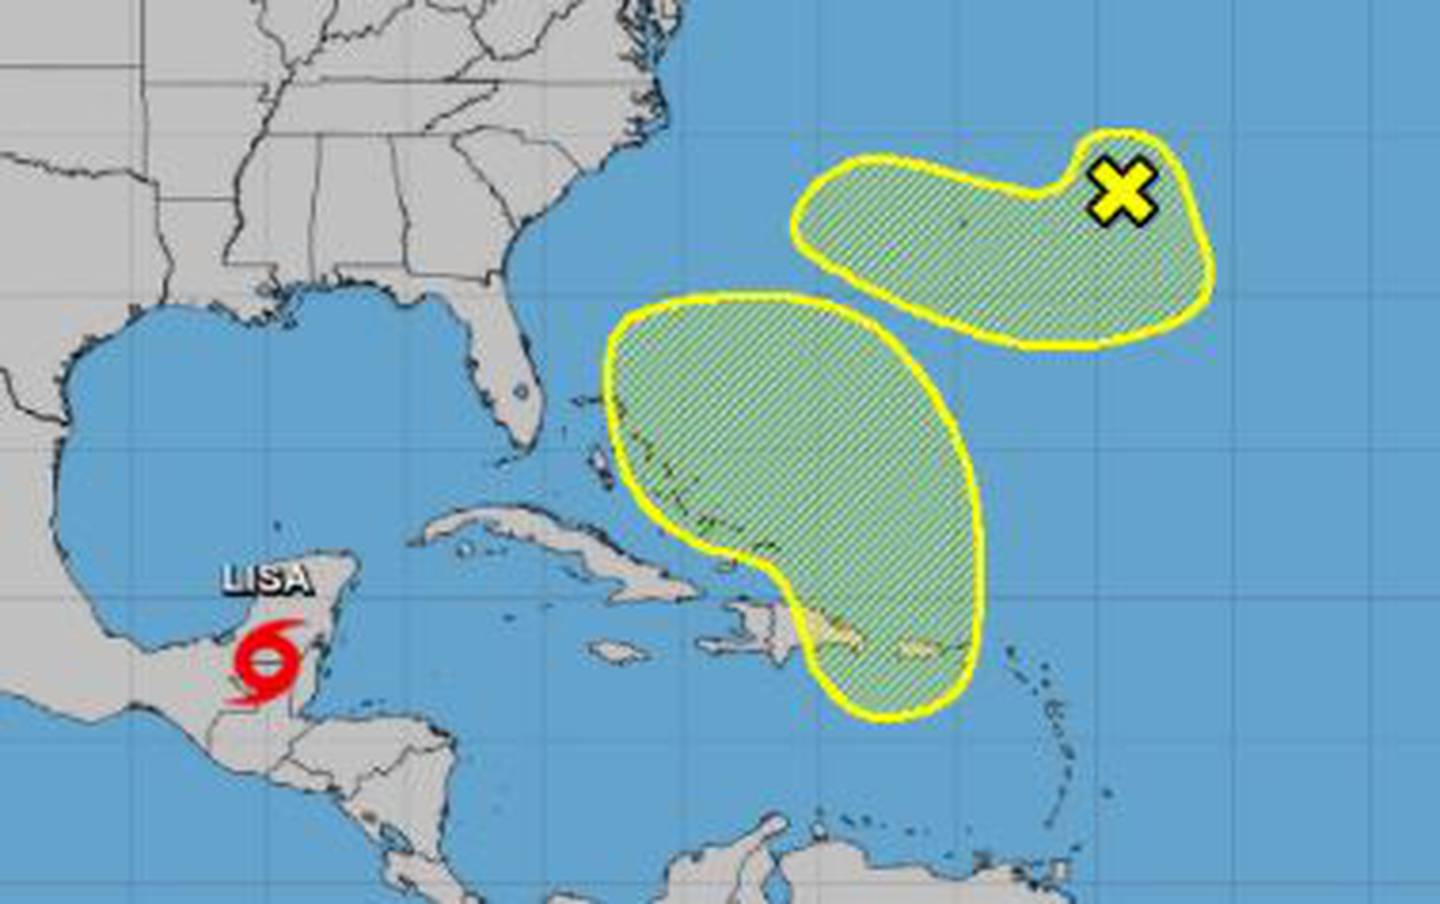 Oltre a Lisa e Martin, il National Hurricane Center sta monitorando due aree dell'Oceano Atlantico per potenziali tempeste.